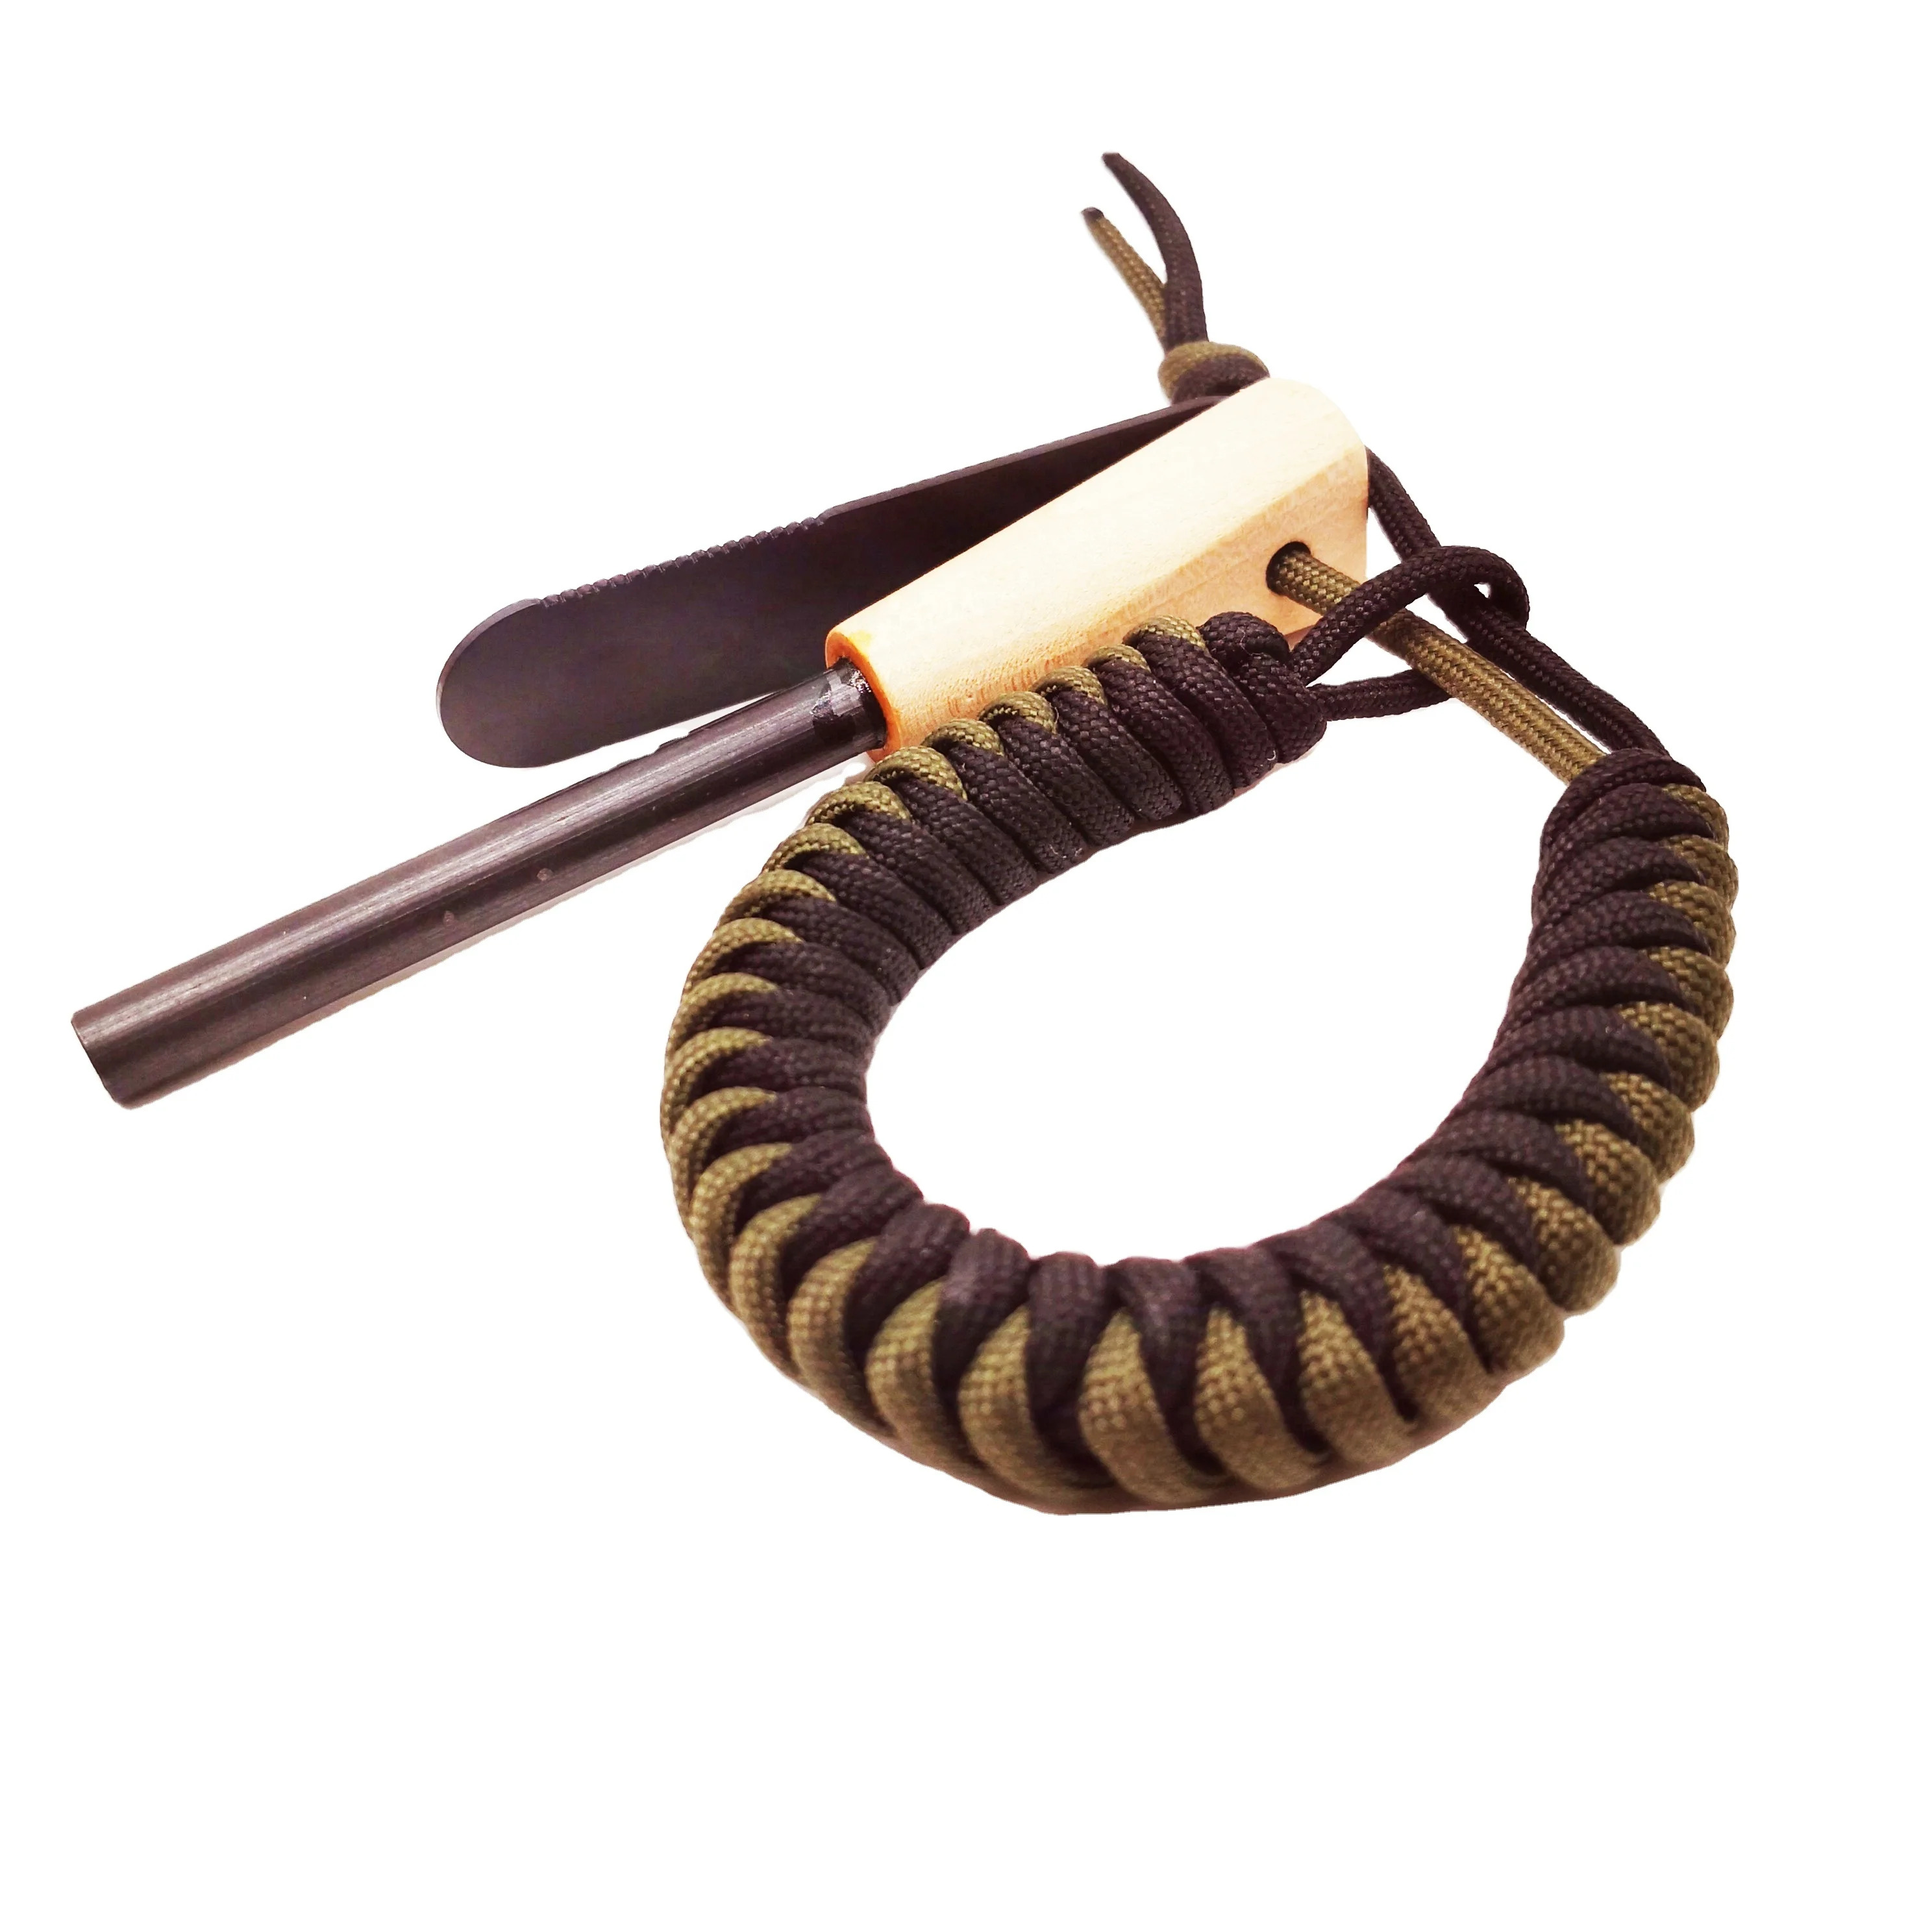 

Free Bracelet Multipurpose Survival Flint Wood 7mm Fat Rod Ferrocerium Rod Fire Starter with Wood Handle, Custom bracelet fire starter